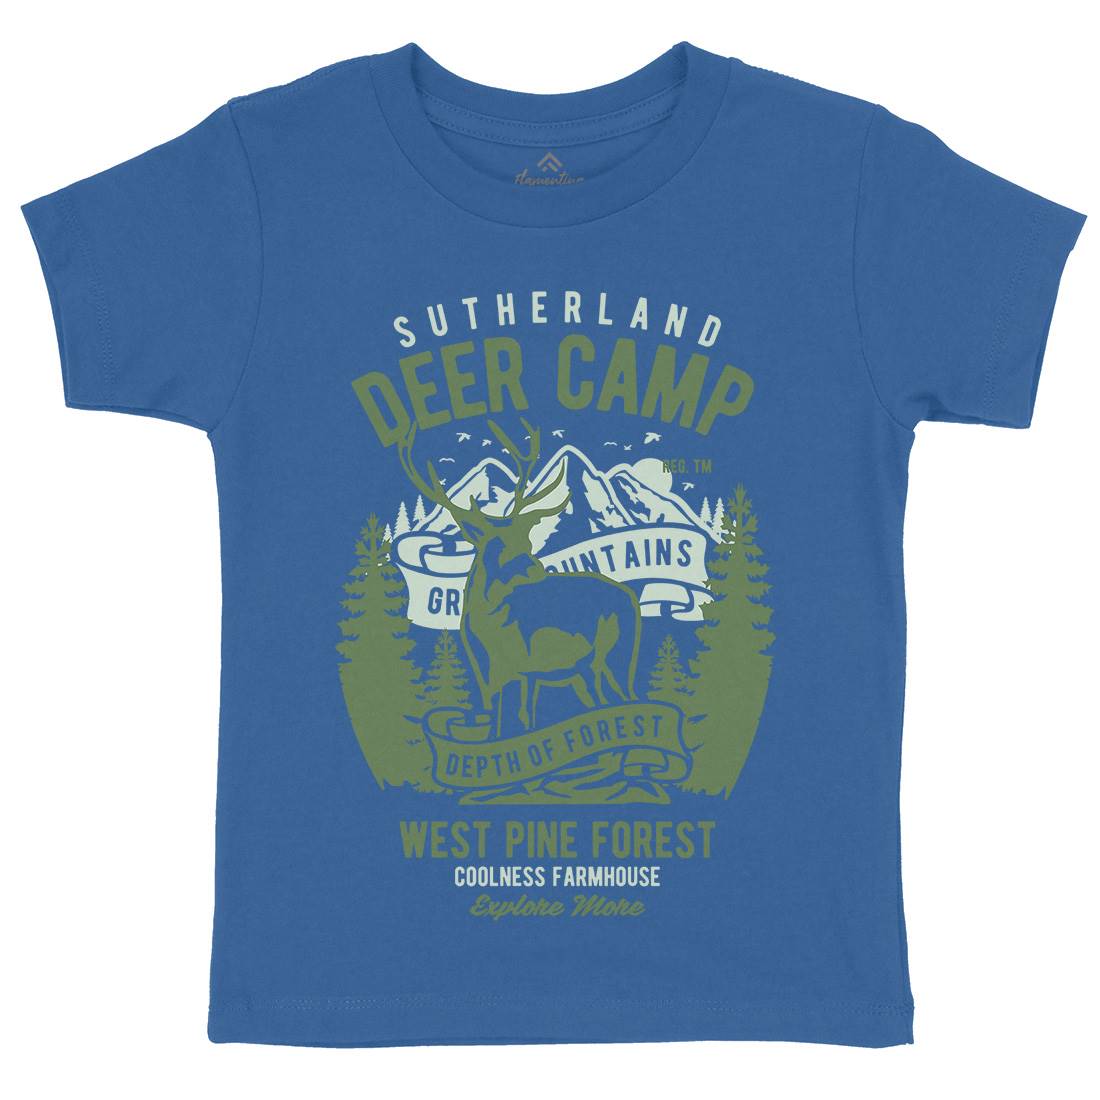 Deer Camp Kids Crew Neck T-Shirt Animals B400